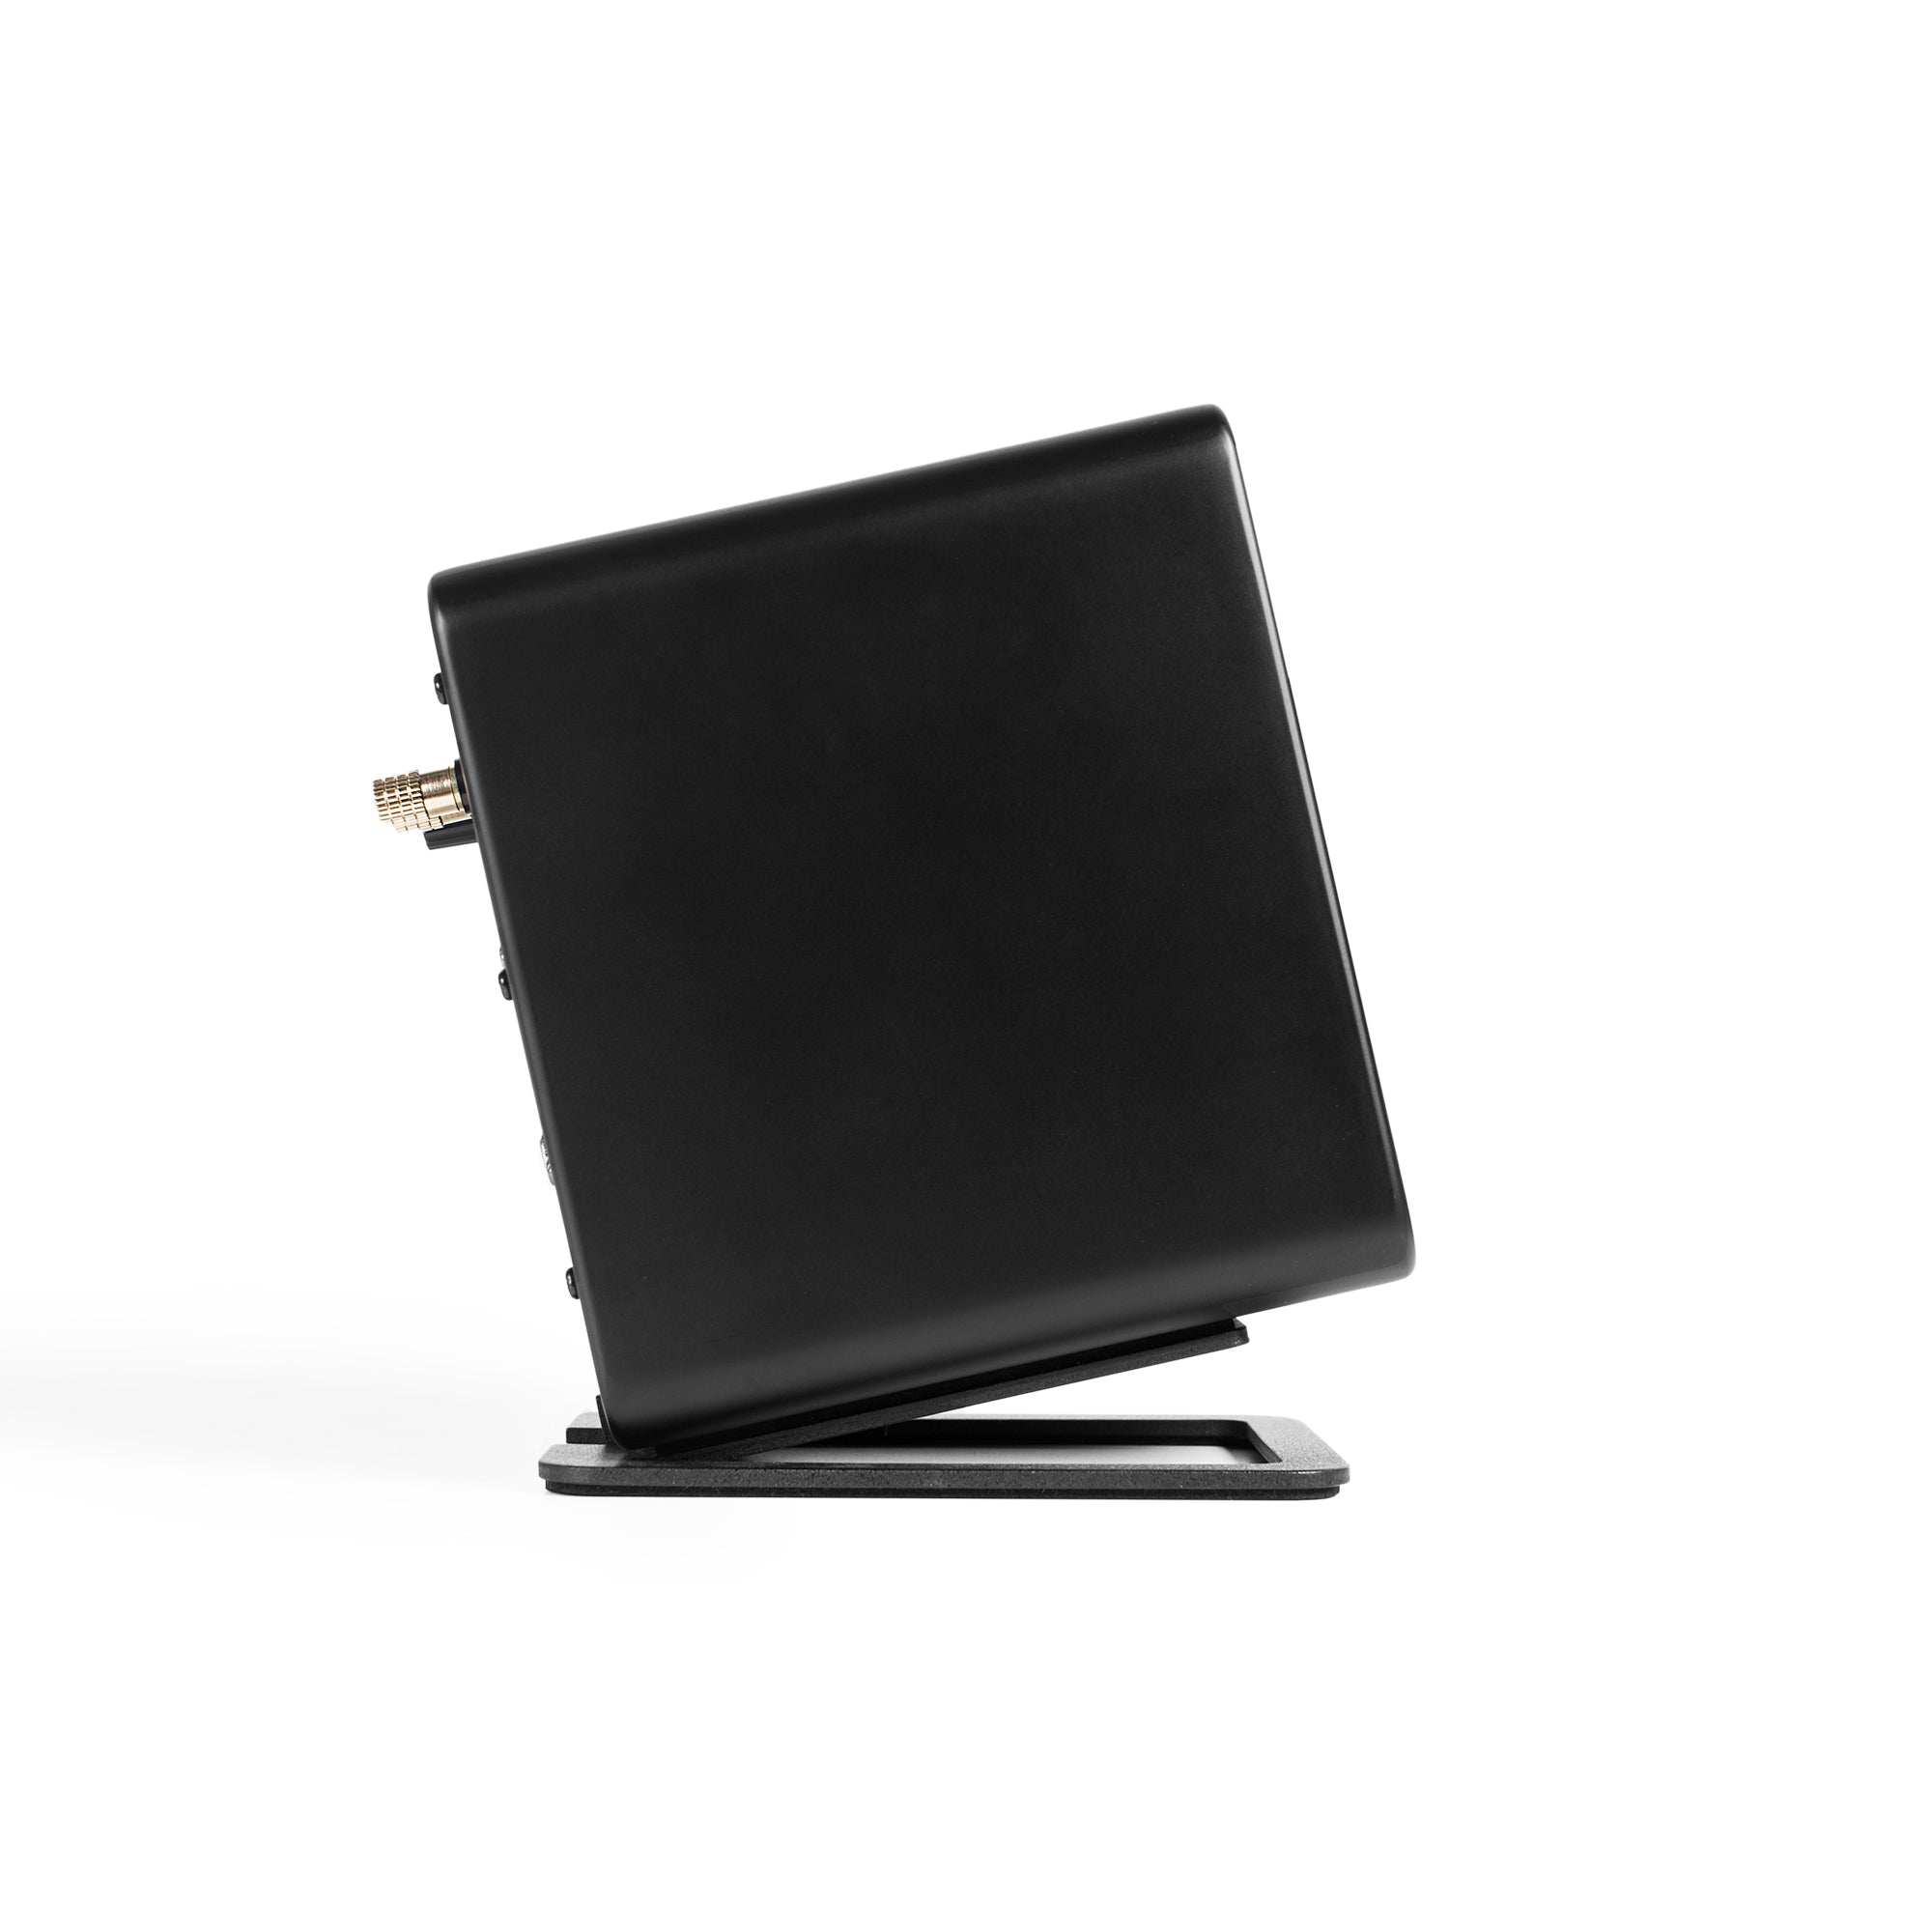 Kanto S2 Angled Desktop Speaker Stands for Small Speakers - Pair, Black